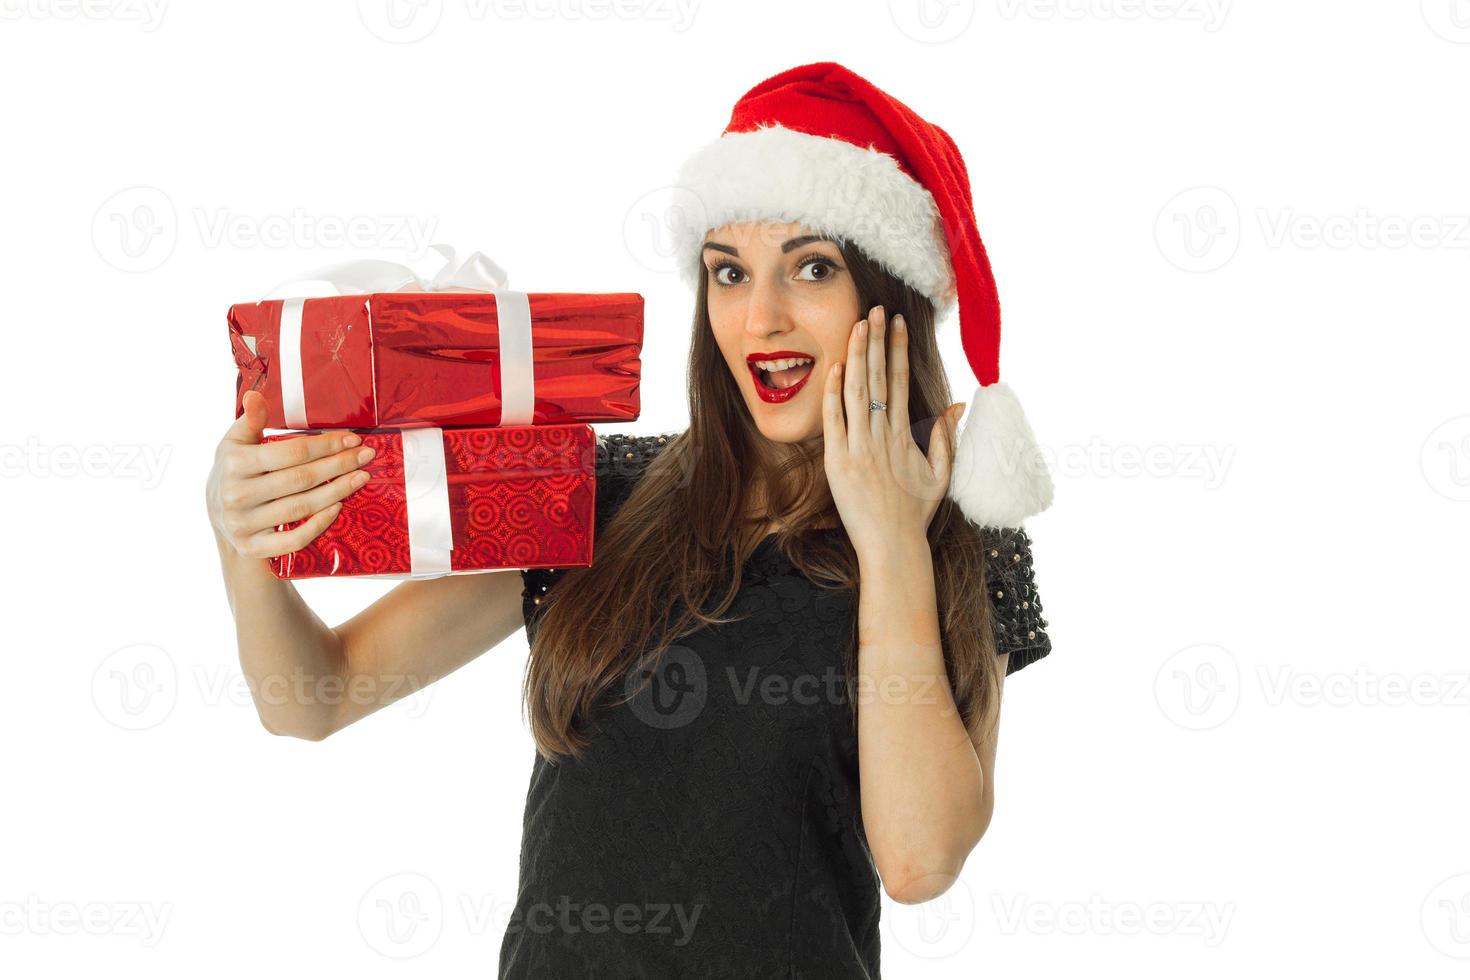 jolie femme en bonnet de noel avec un cadeau rouge photo